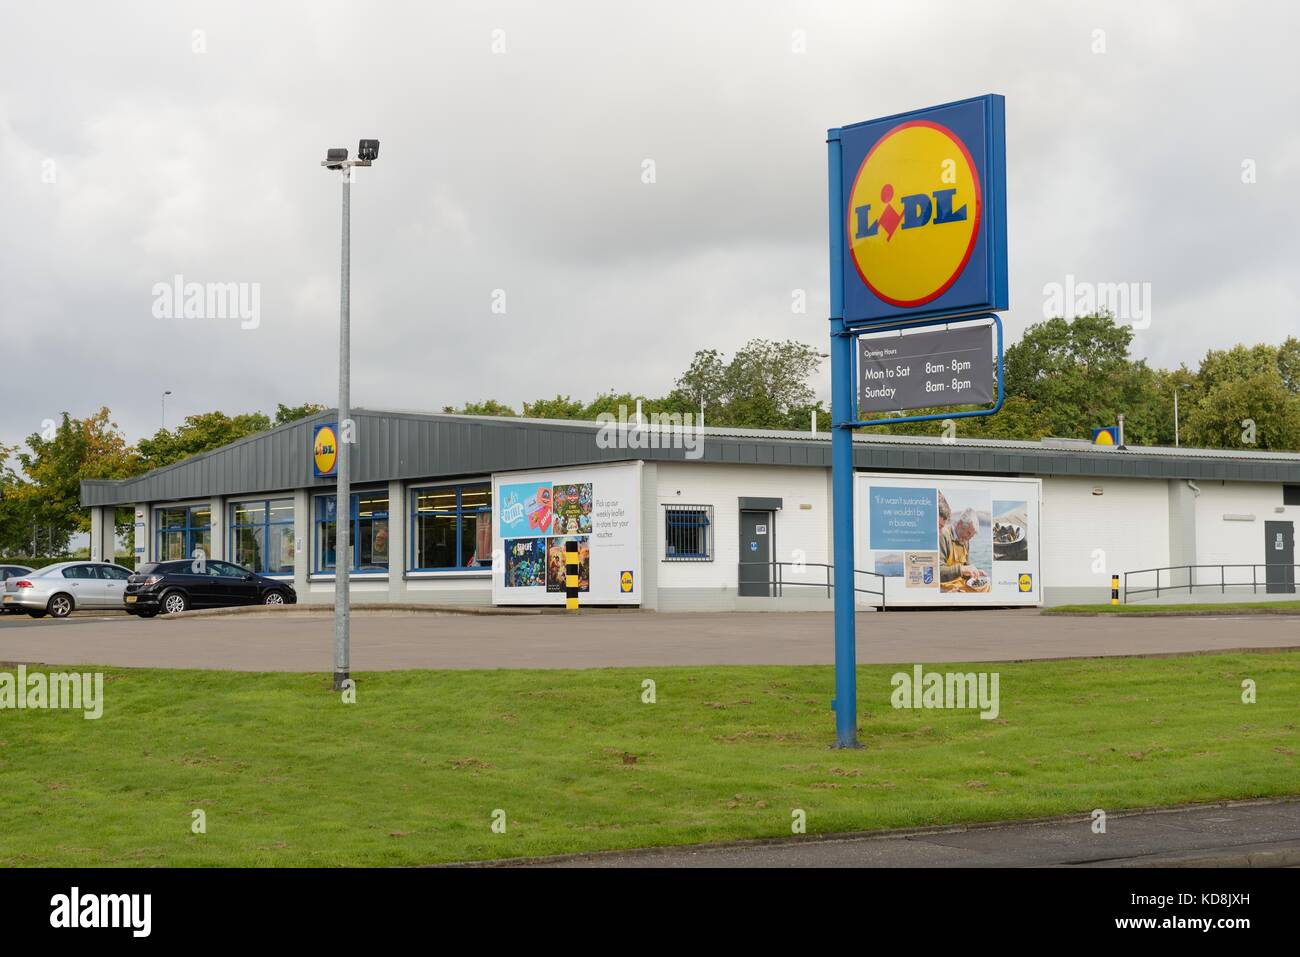 La chaîne de supermarchés discount mondial allemand, Lidl Stiftung & Co, à St Rollox, Springburn, Glasgow, Écosse, Royaume-Uni Banque D'Images